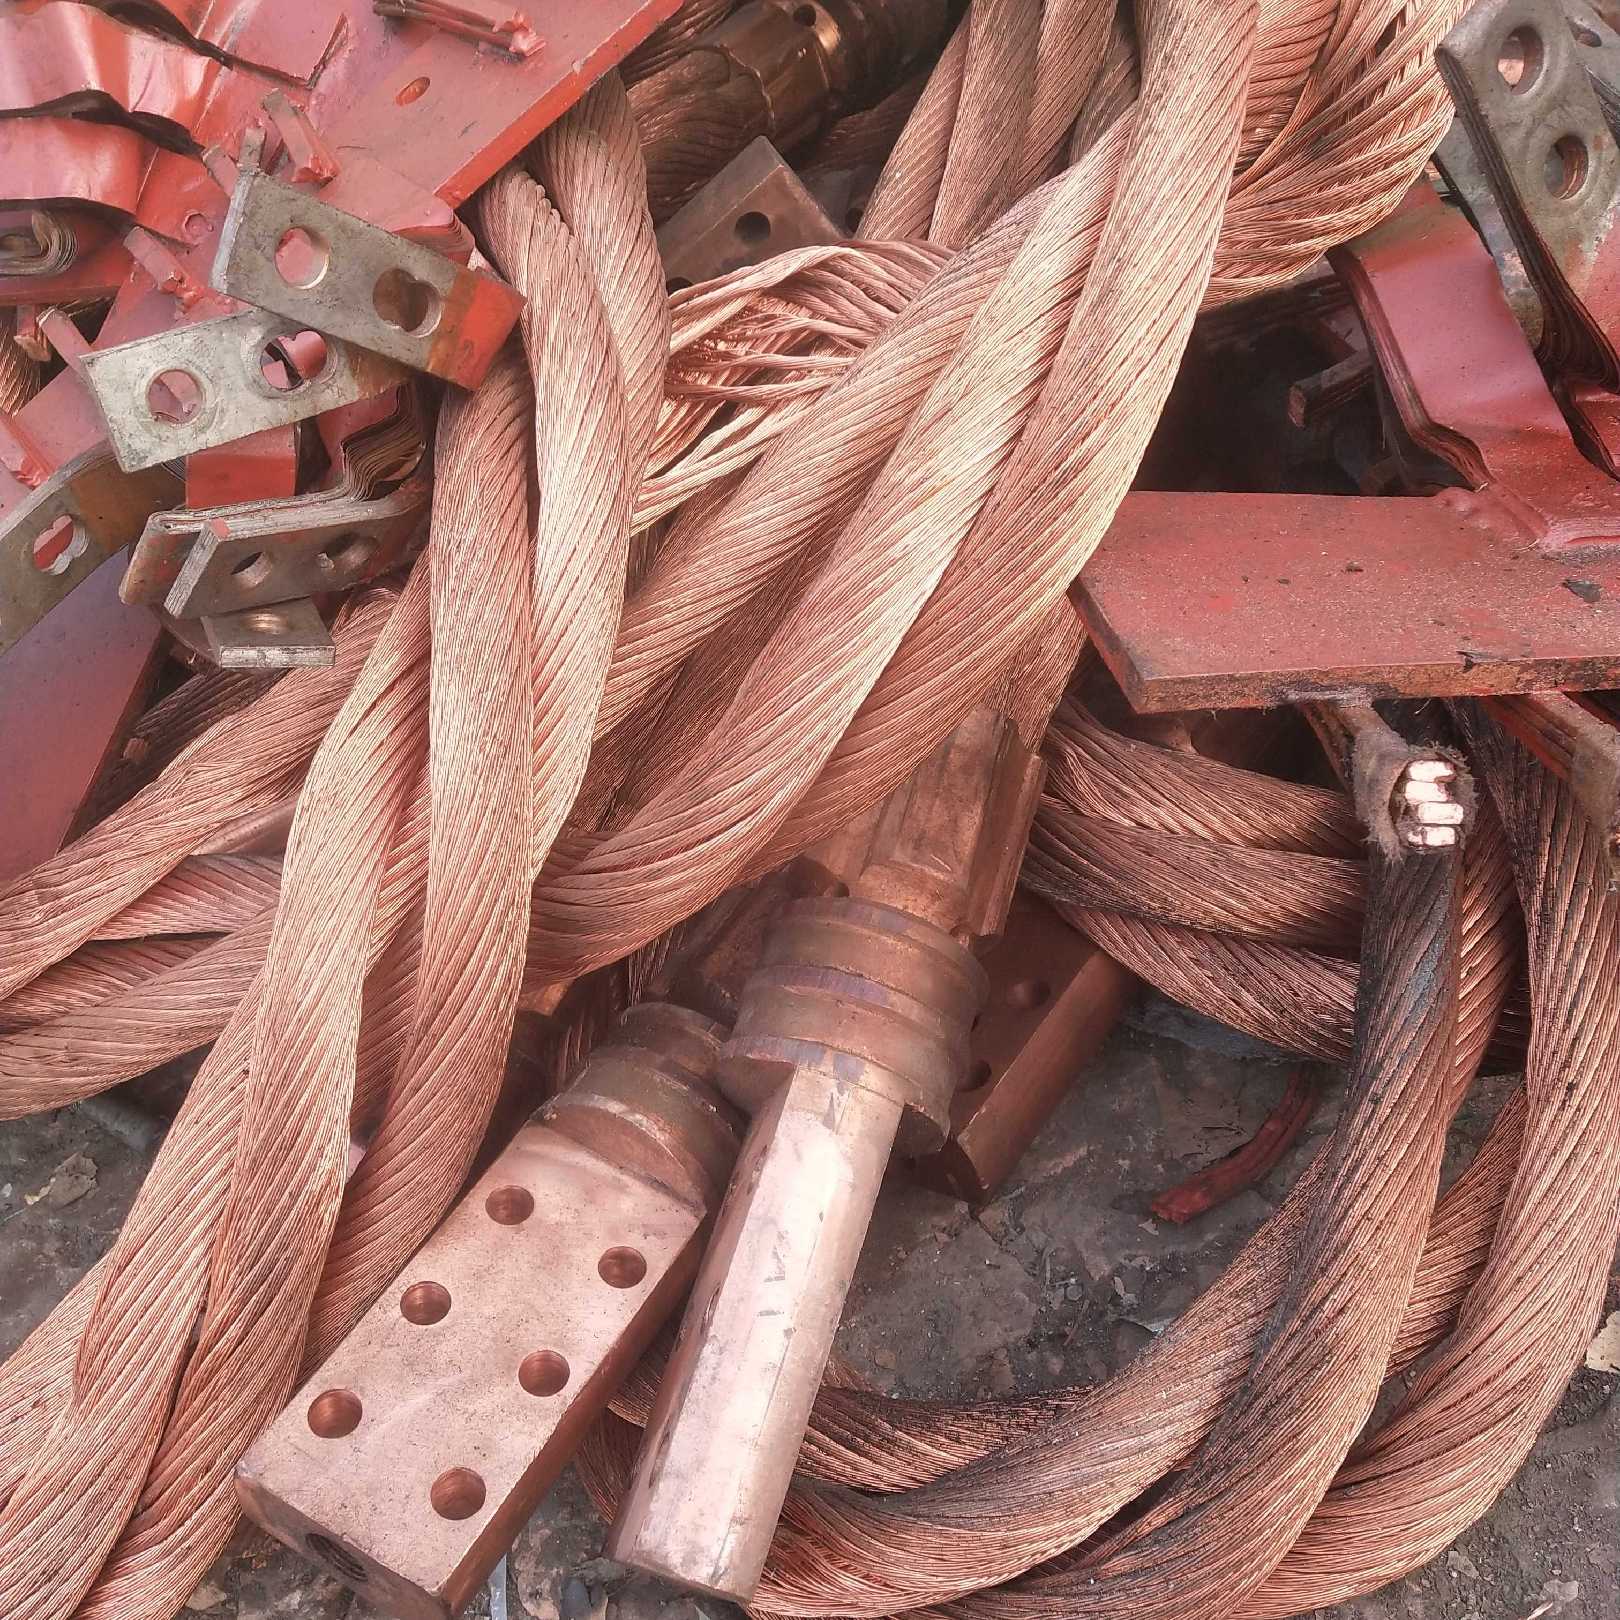 遵化废旧电缆回收回收电缆厂家遵化回收电缆厂家